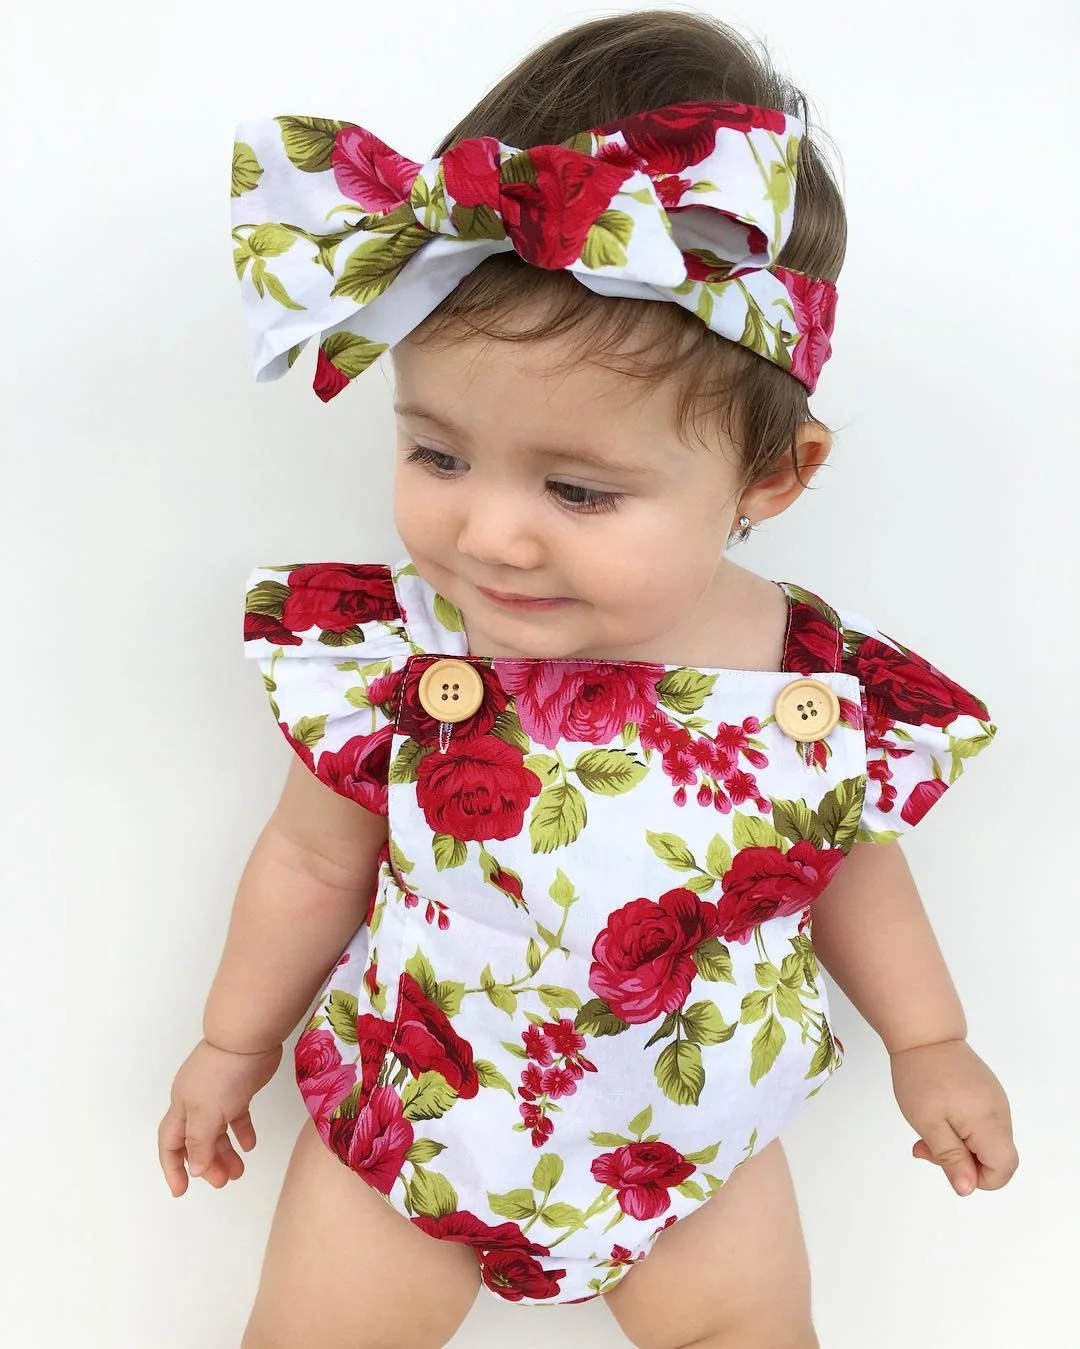 Oklady/ Одежда для новорожденных девочек с цветочным рисунком комбинезон с рукавами с оборками+ повязка на голову, комплект из 2 предметов, пляжный костюм Bebek Giyim, размеры от 0 до 24 месяцев